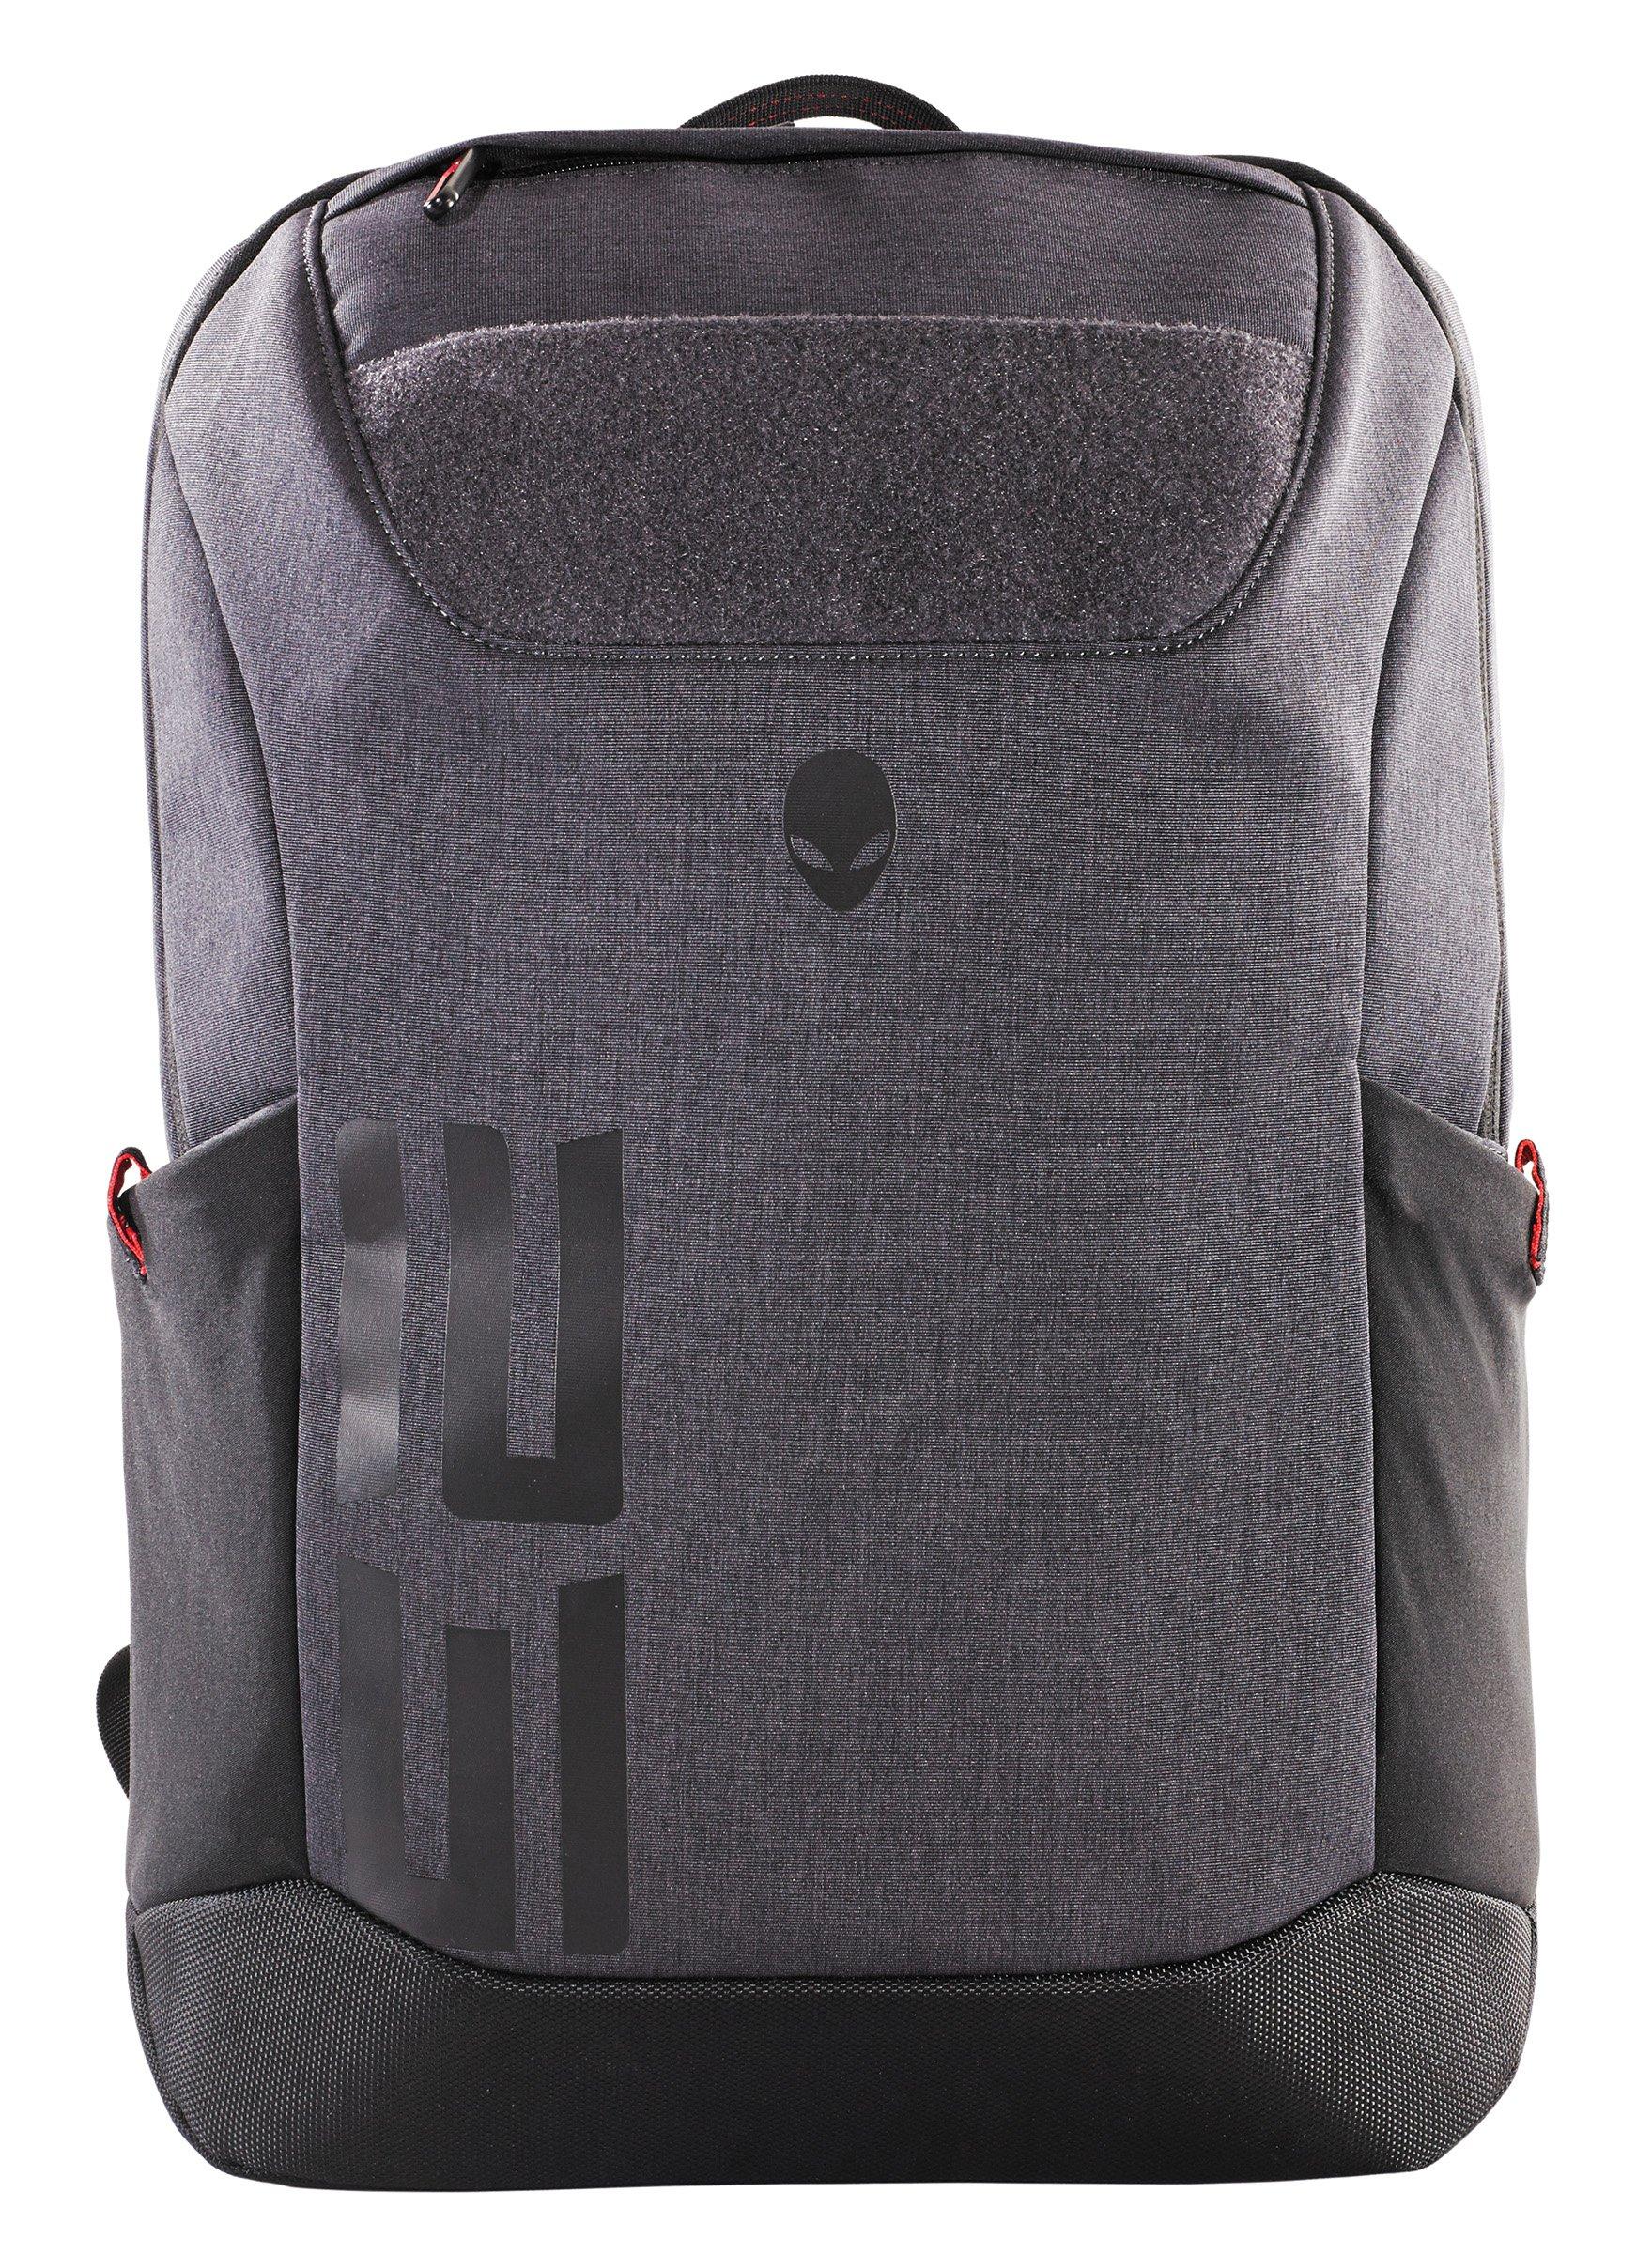 Alienware Pro Backpack